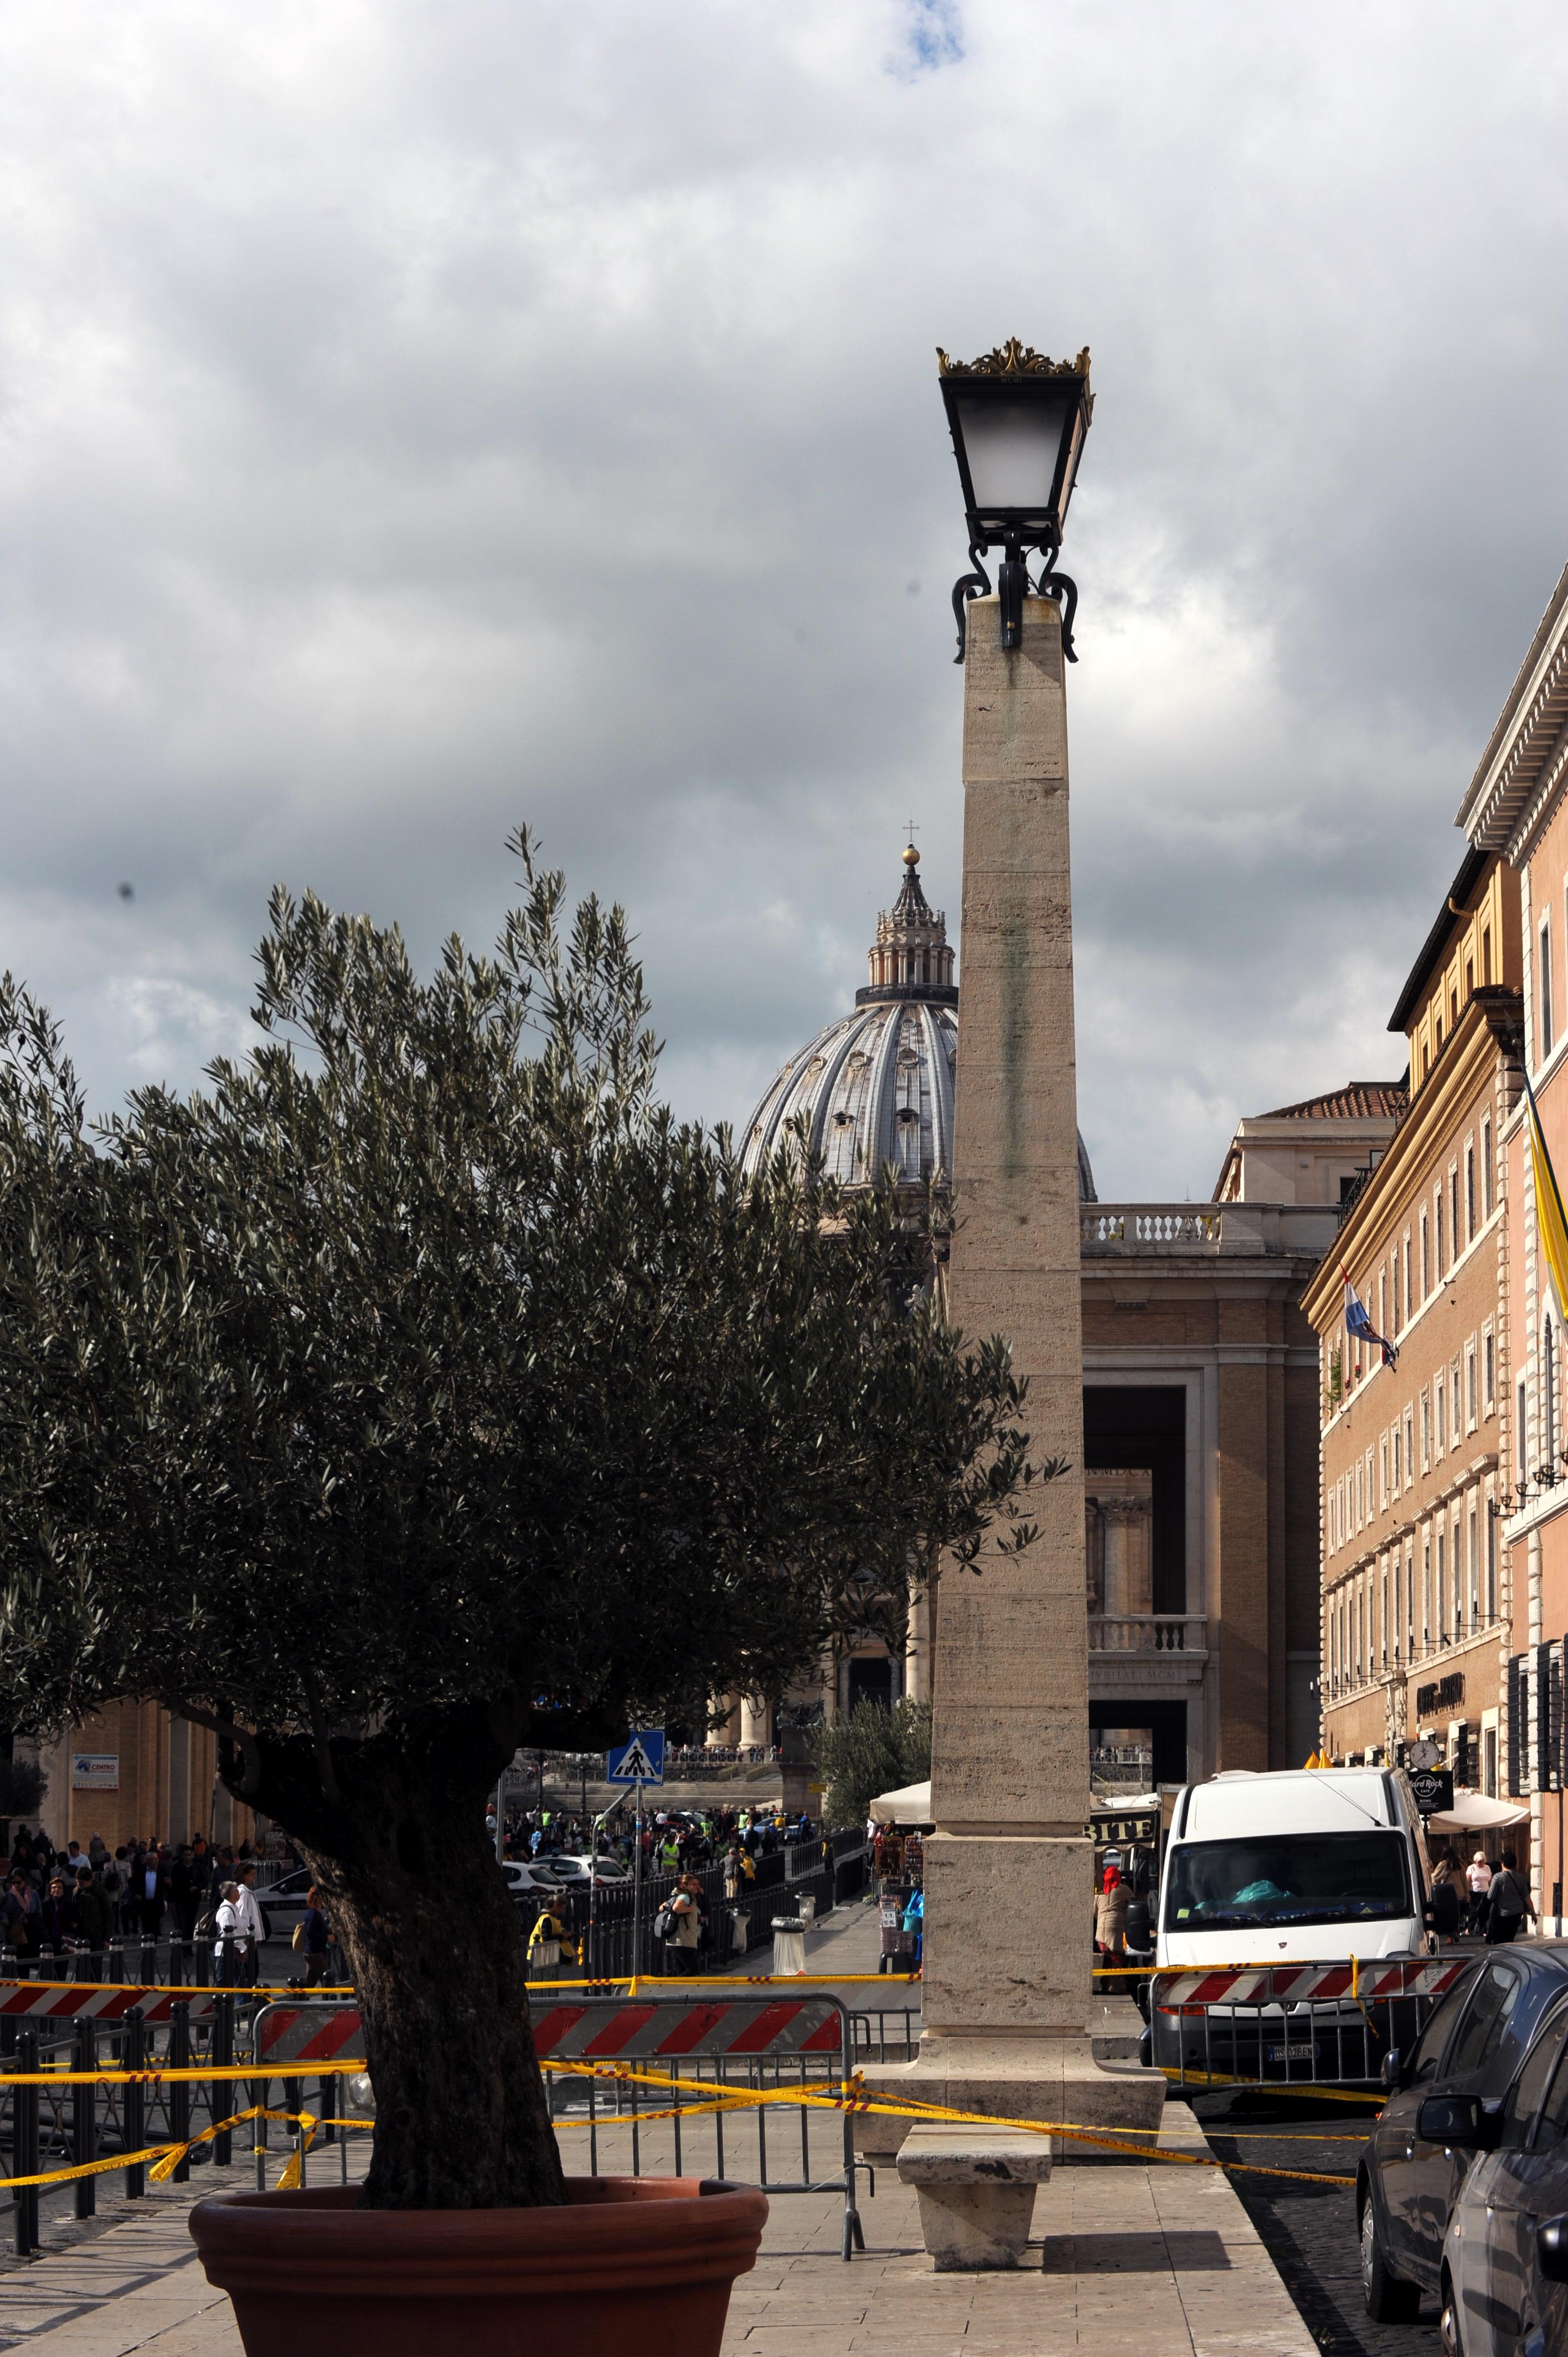 Roma, 2 novembre 2016. Blocchi di una colonna sconnessi per il terremoto in via della Conciliazione. (foto Adnkronos/Cristiano Camera)